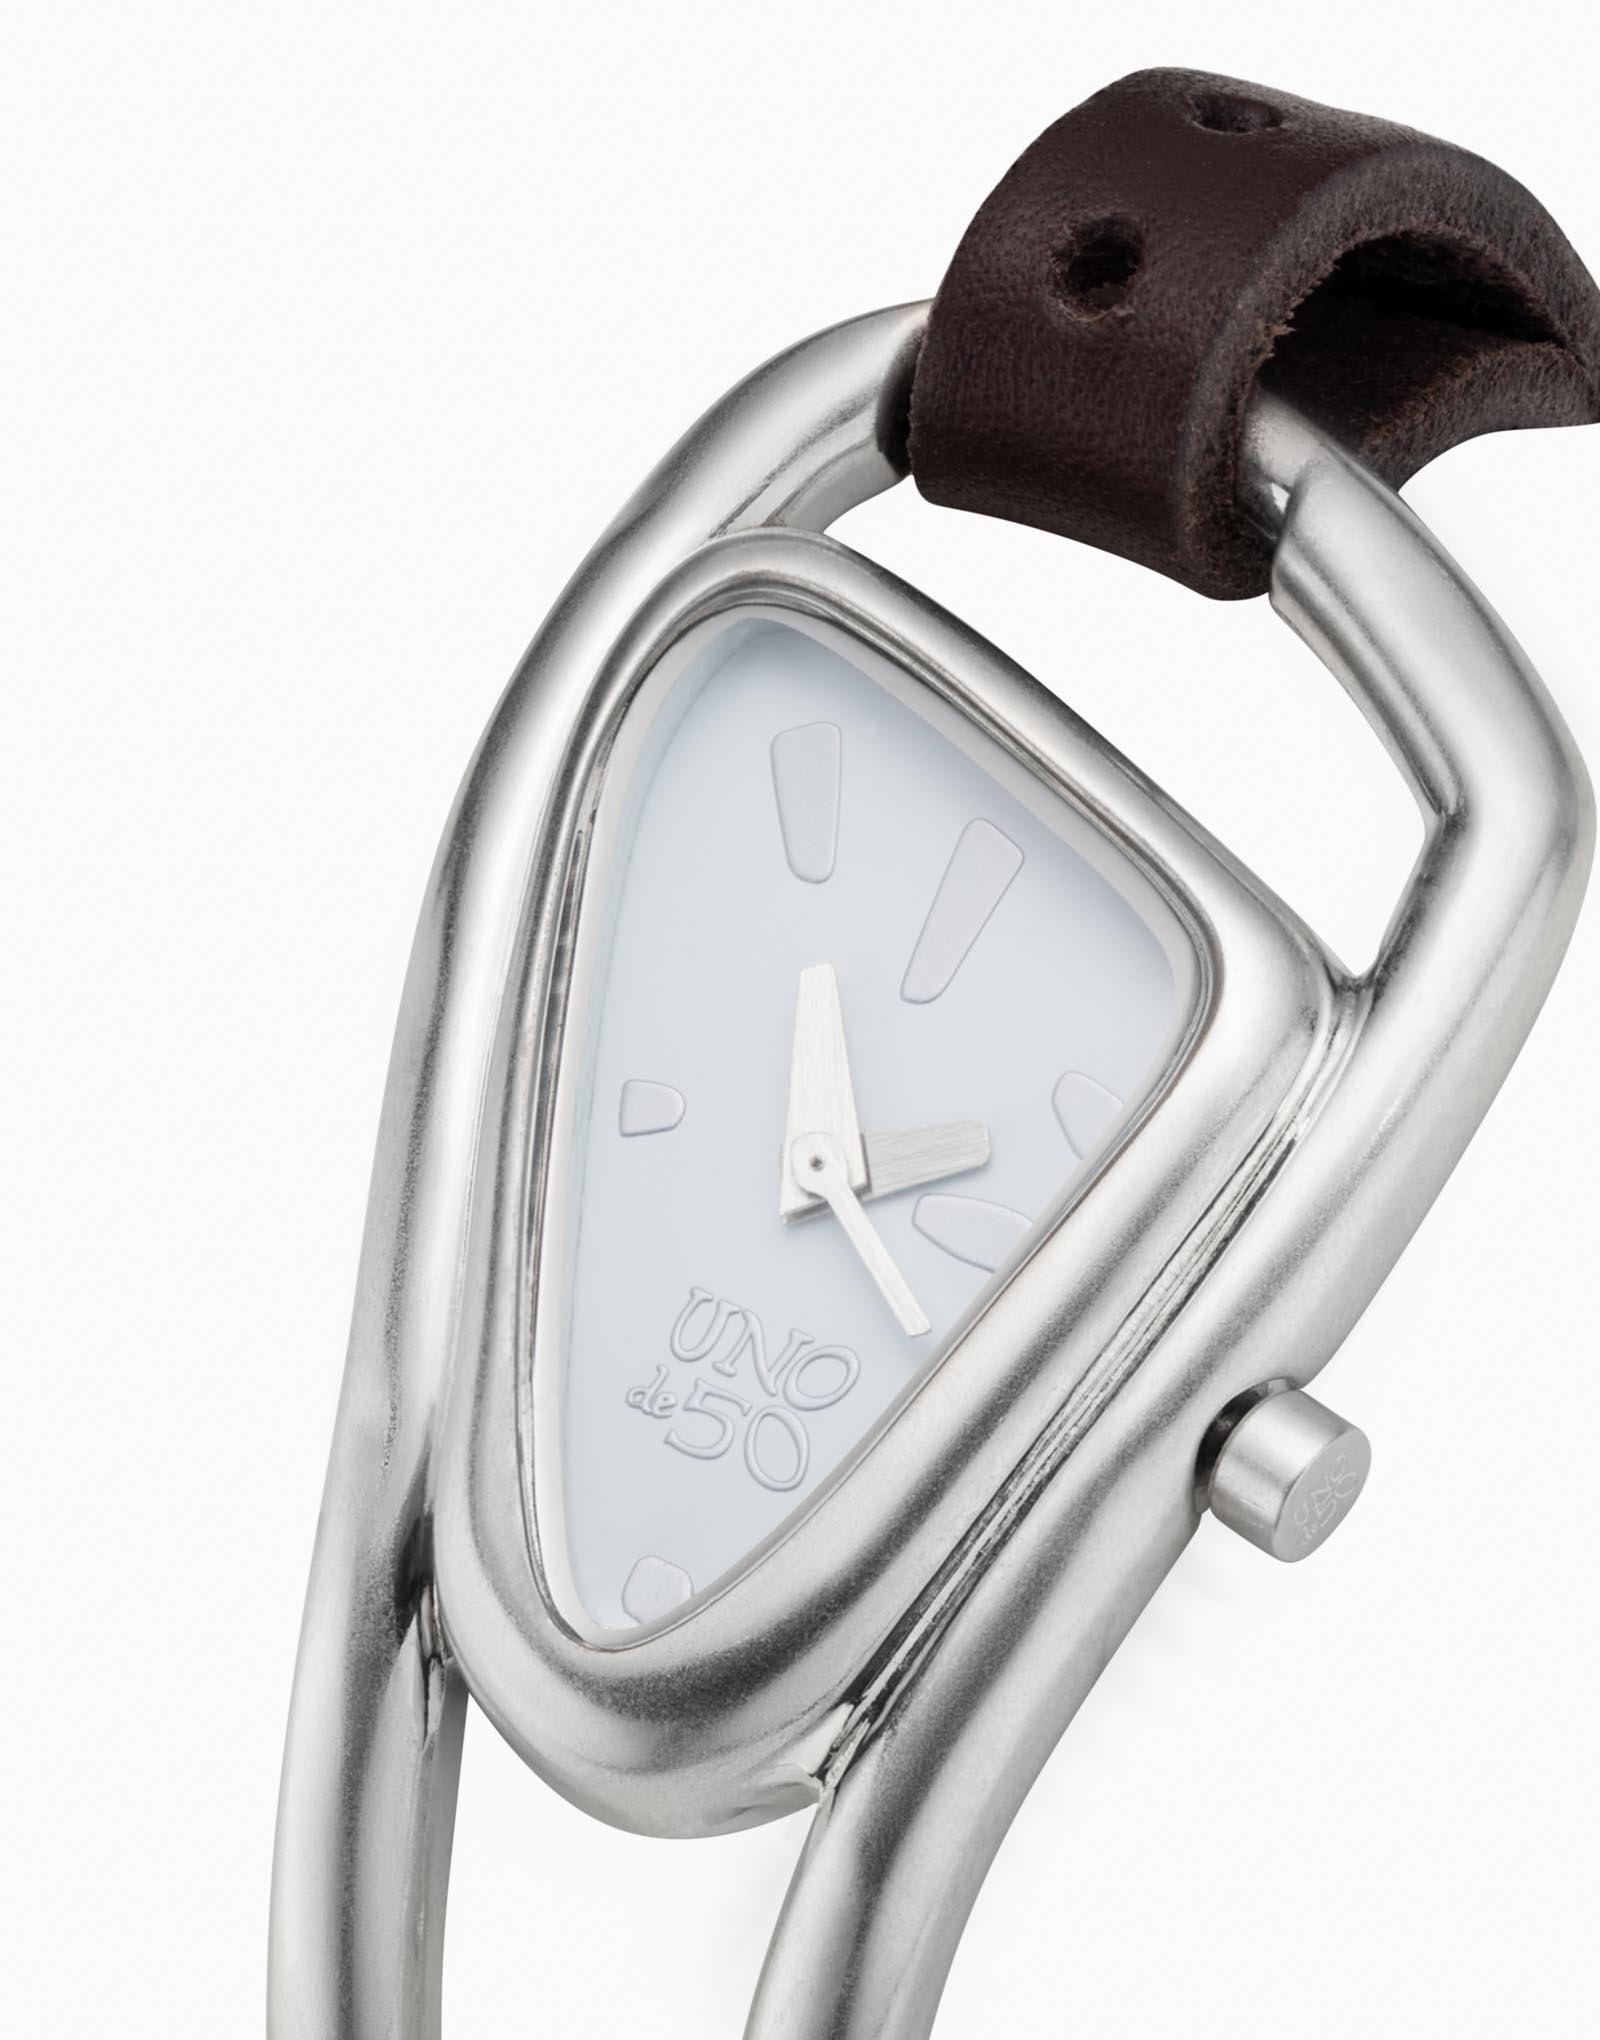 Orologio da donna Unode50 in metallo placcato argento con cinturino trasformabile in bracciale, Argent, large image number null